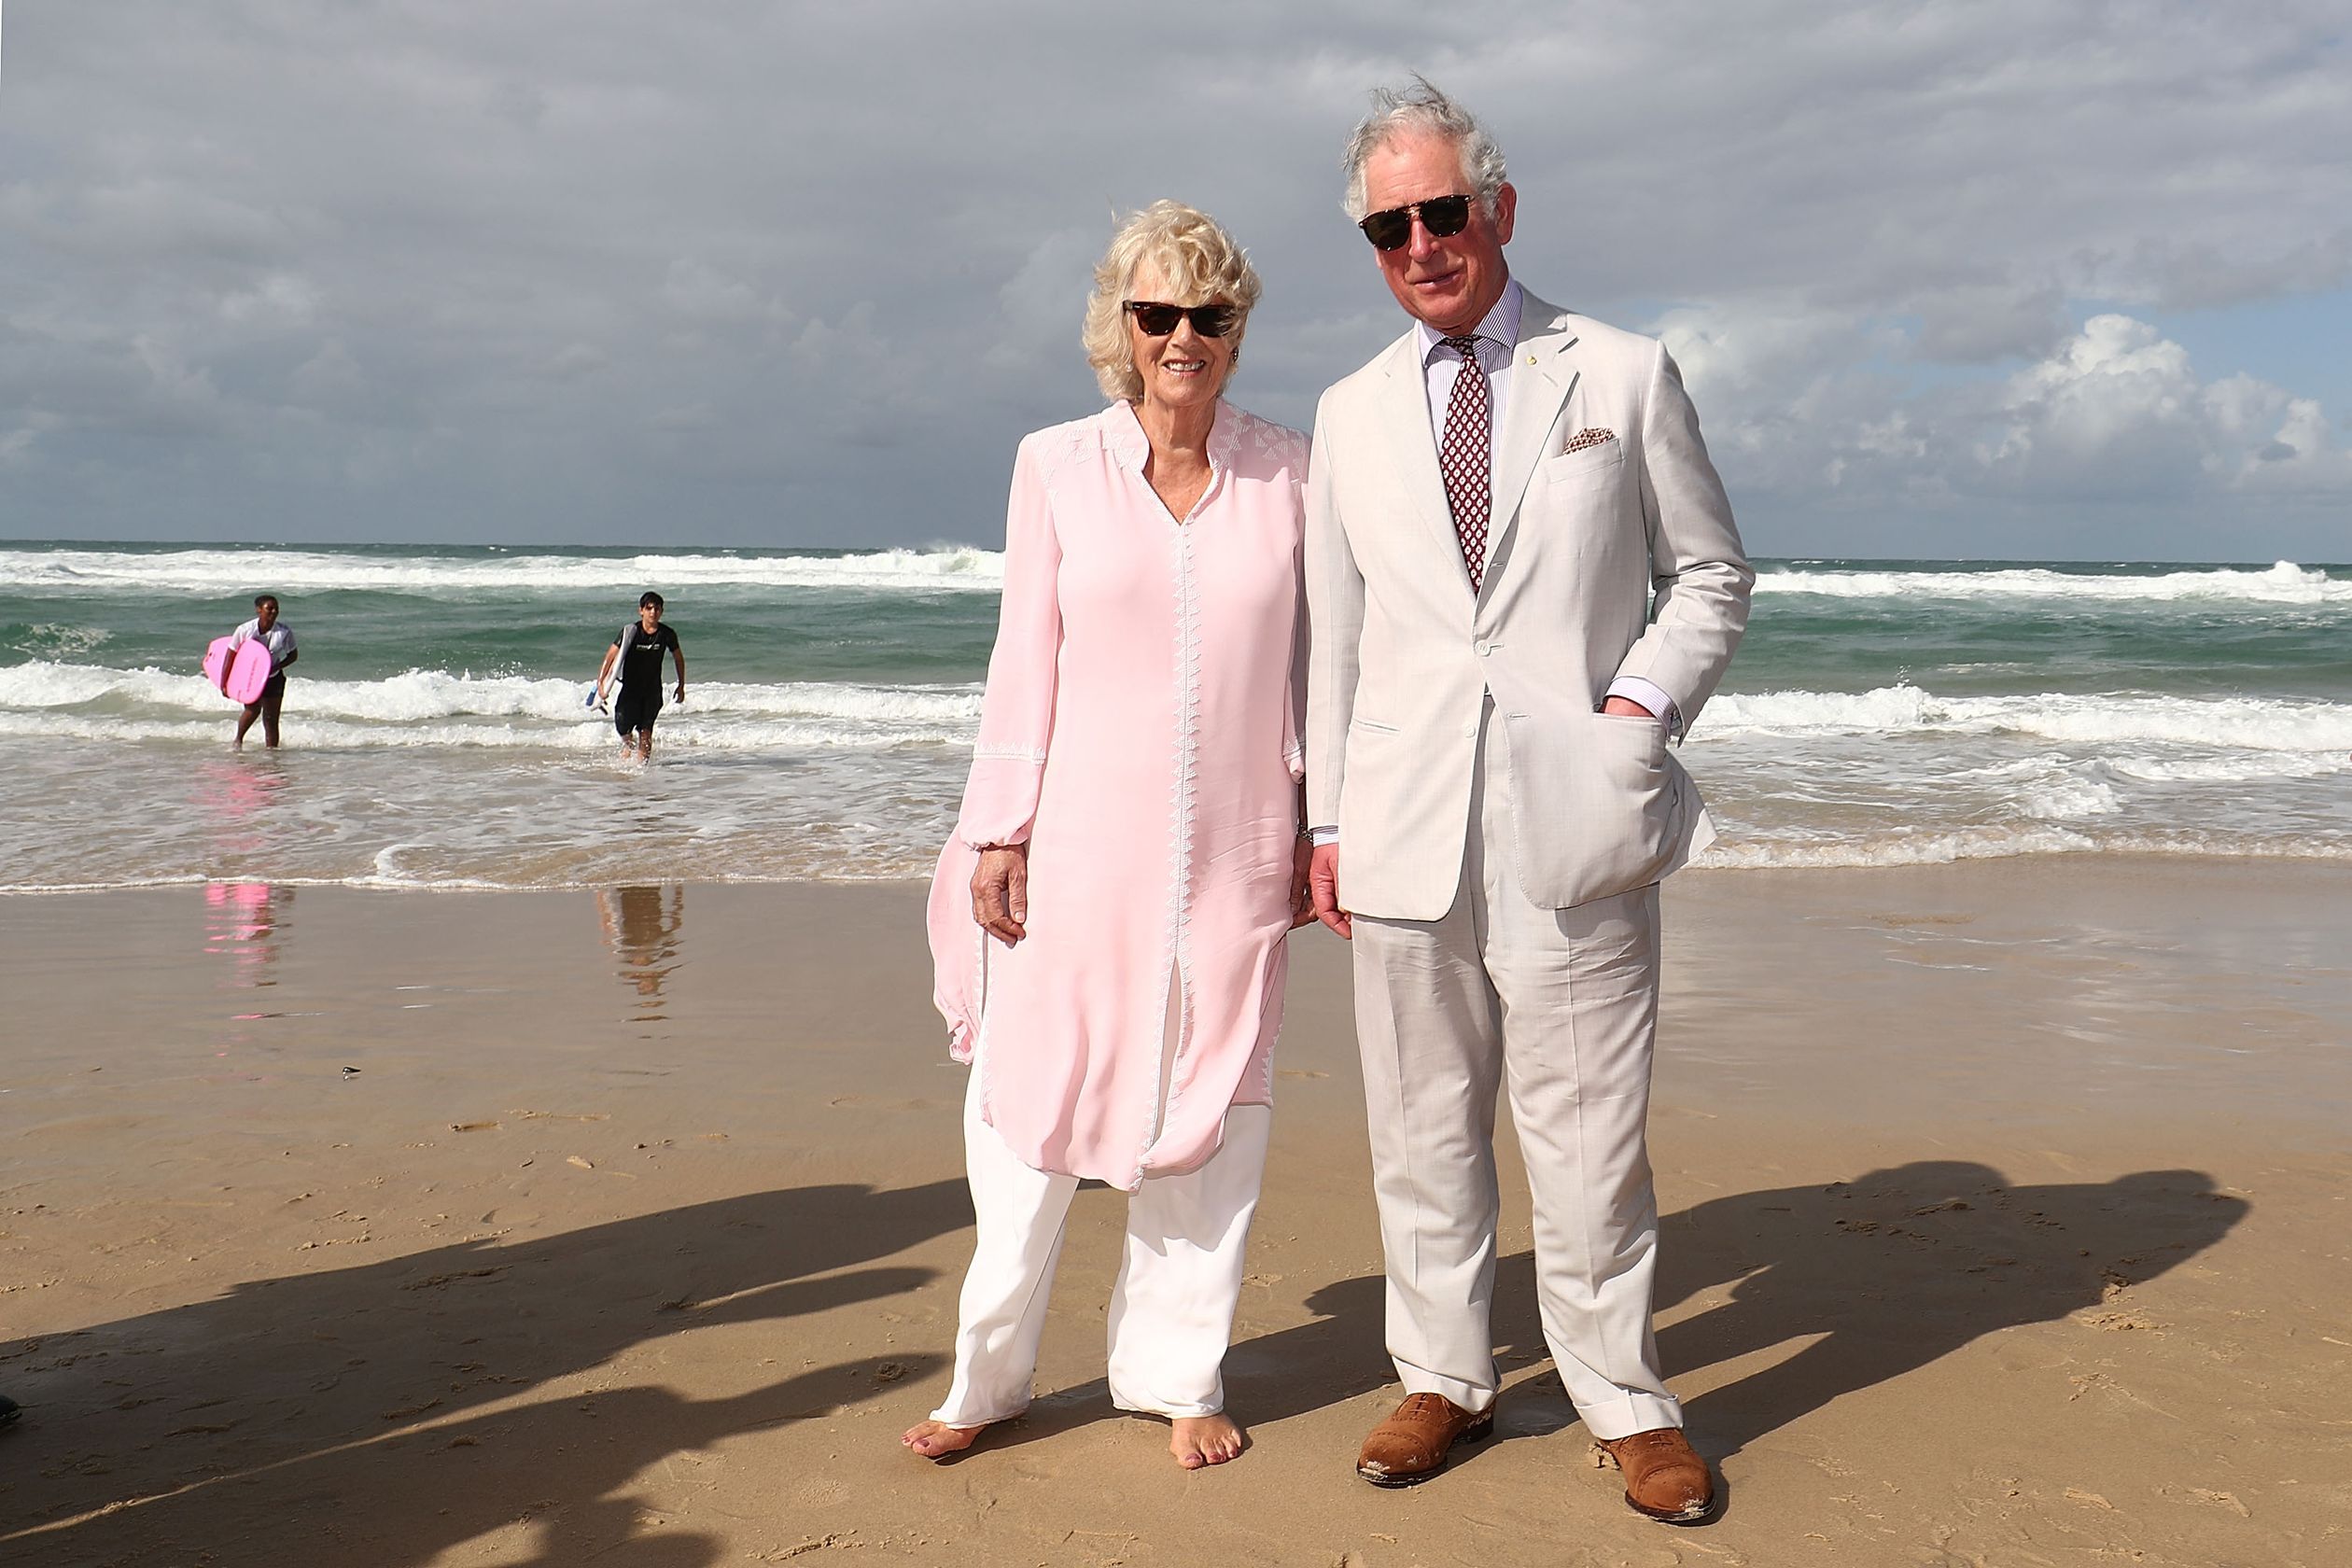 Bij het bezoek aan de Australische 'Gold Coast' kan een strandfoto niet missen.